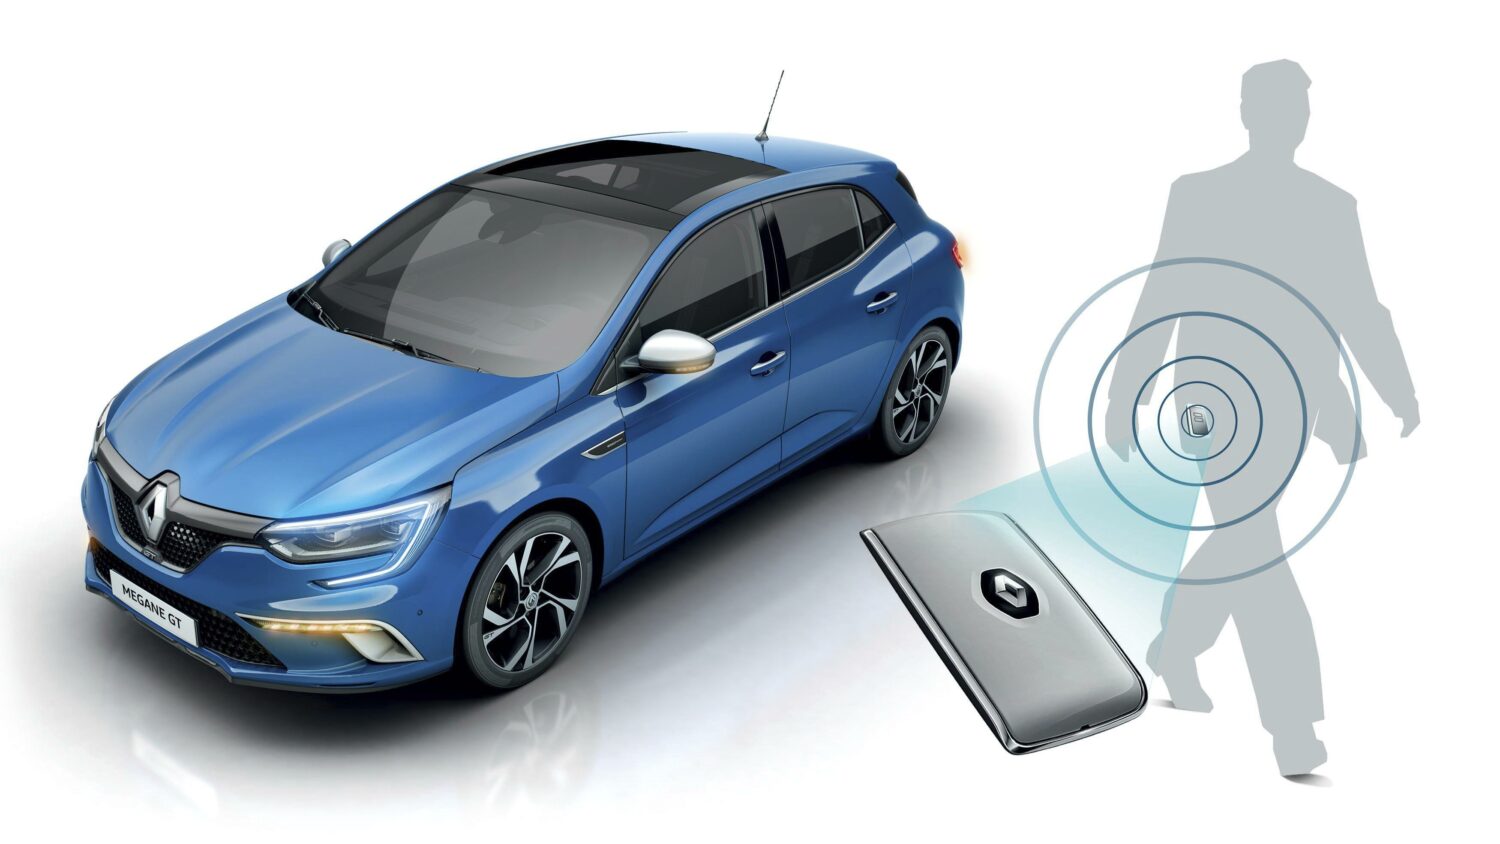 2021 - Story Renault - Carte mains libres : 20 ans d’innovation dans la poche